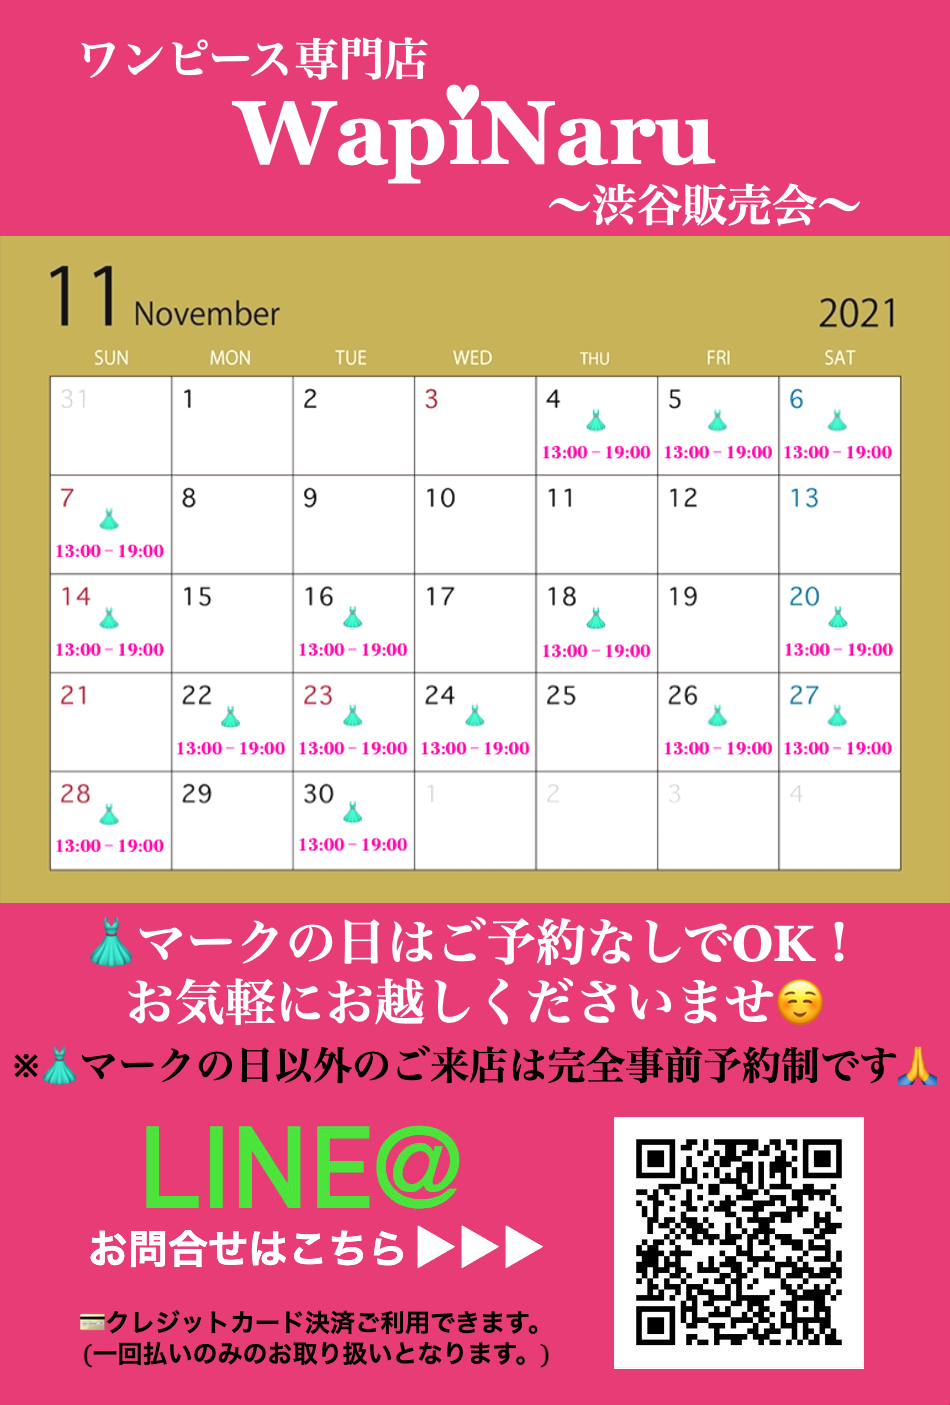 2021年11月 渋谷販売会